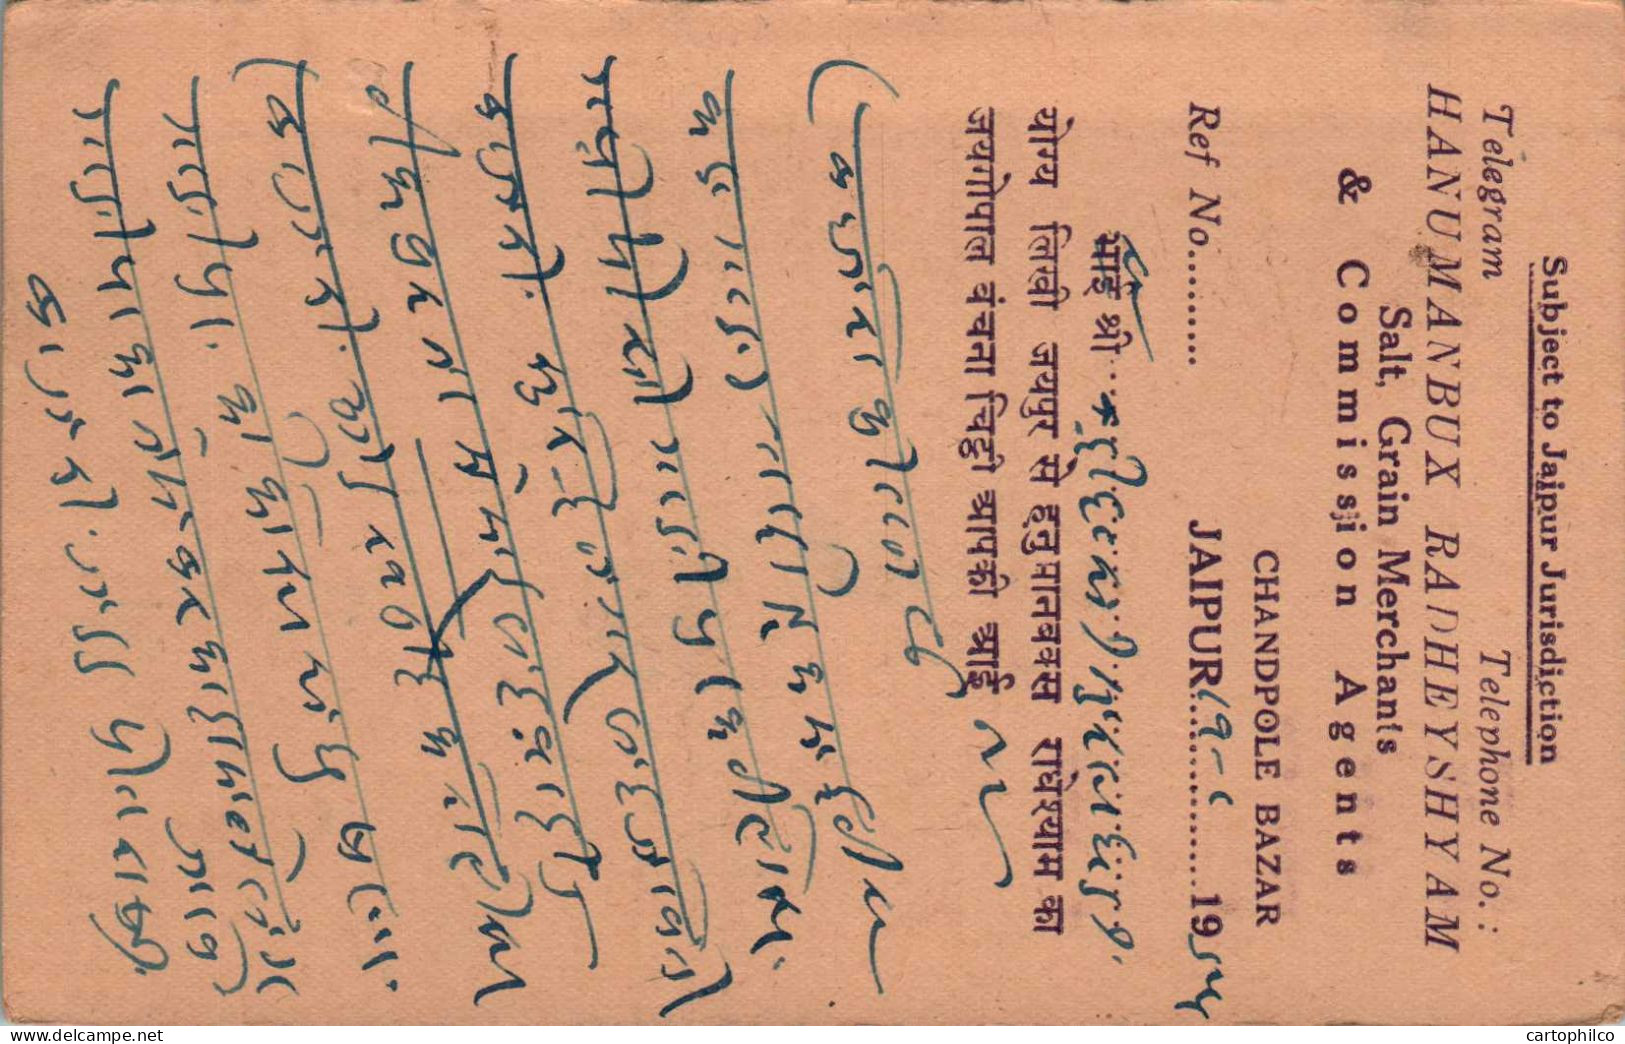 India Postal Stationery Goddess 9p To Nawalgarh  Hanumanbux Radheyshyam - Cartes Postales